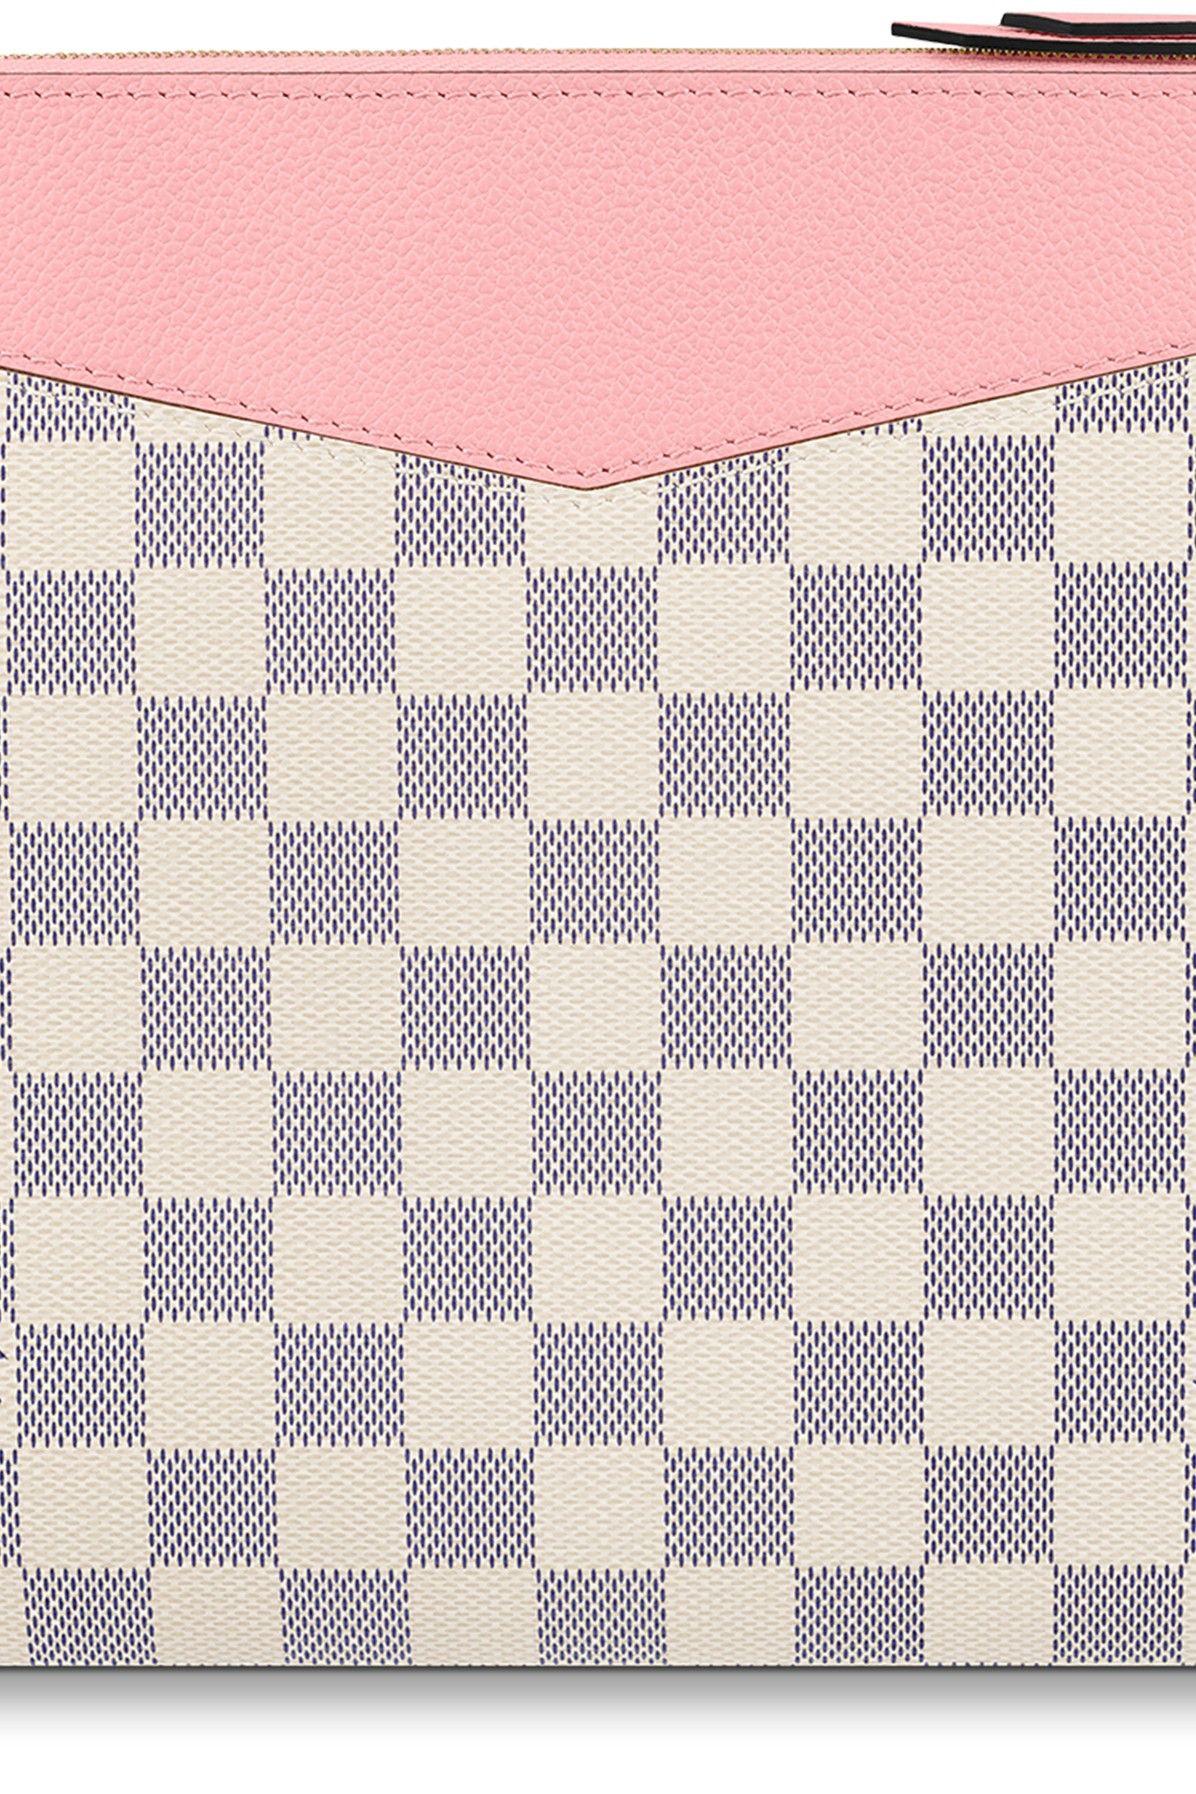 Louis Vuitton Damier Azur Pink Daily Pouch Zip Porfolio Clutch